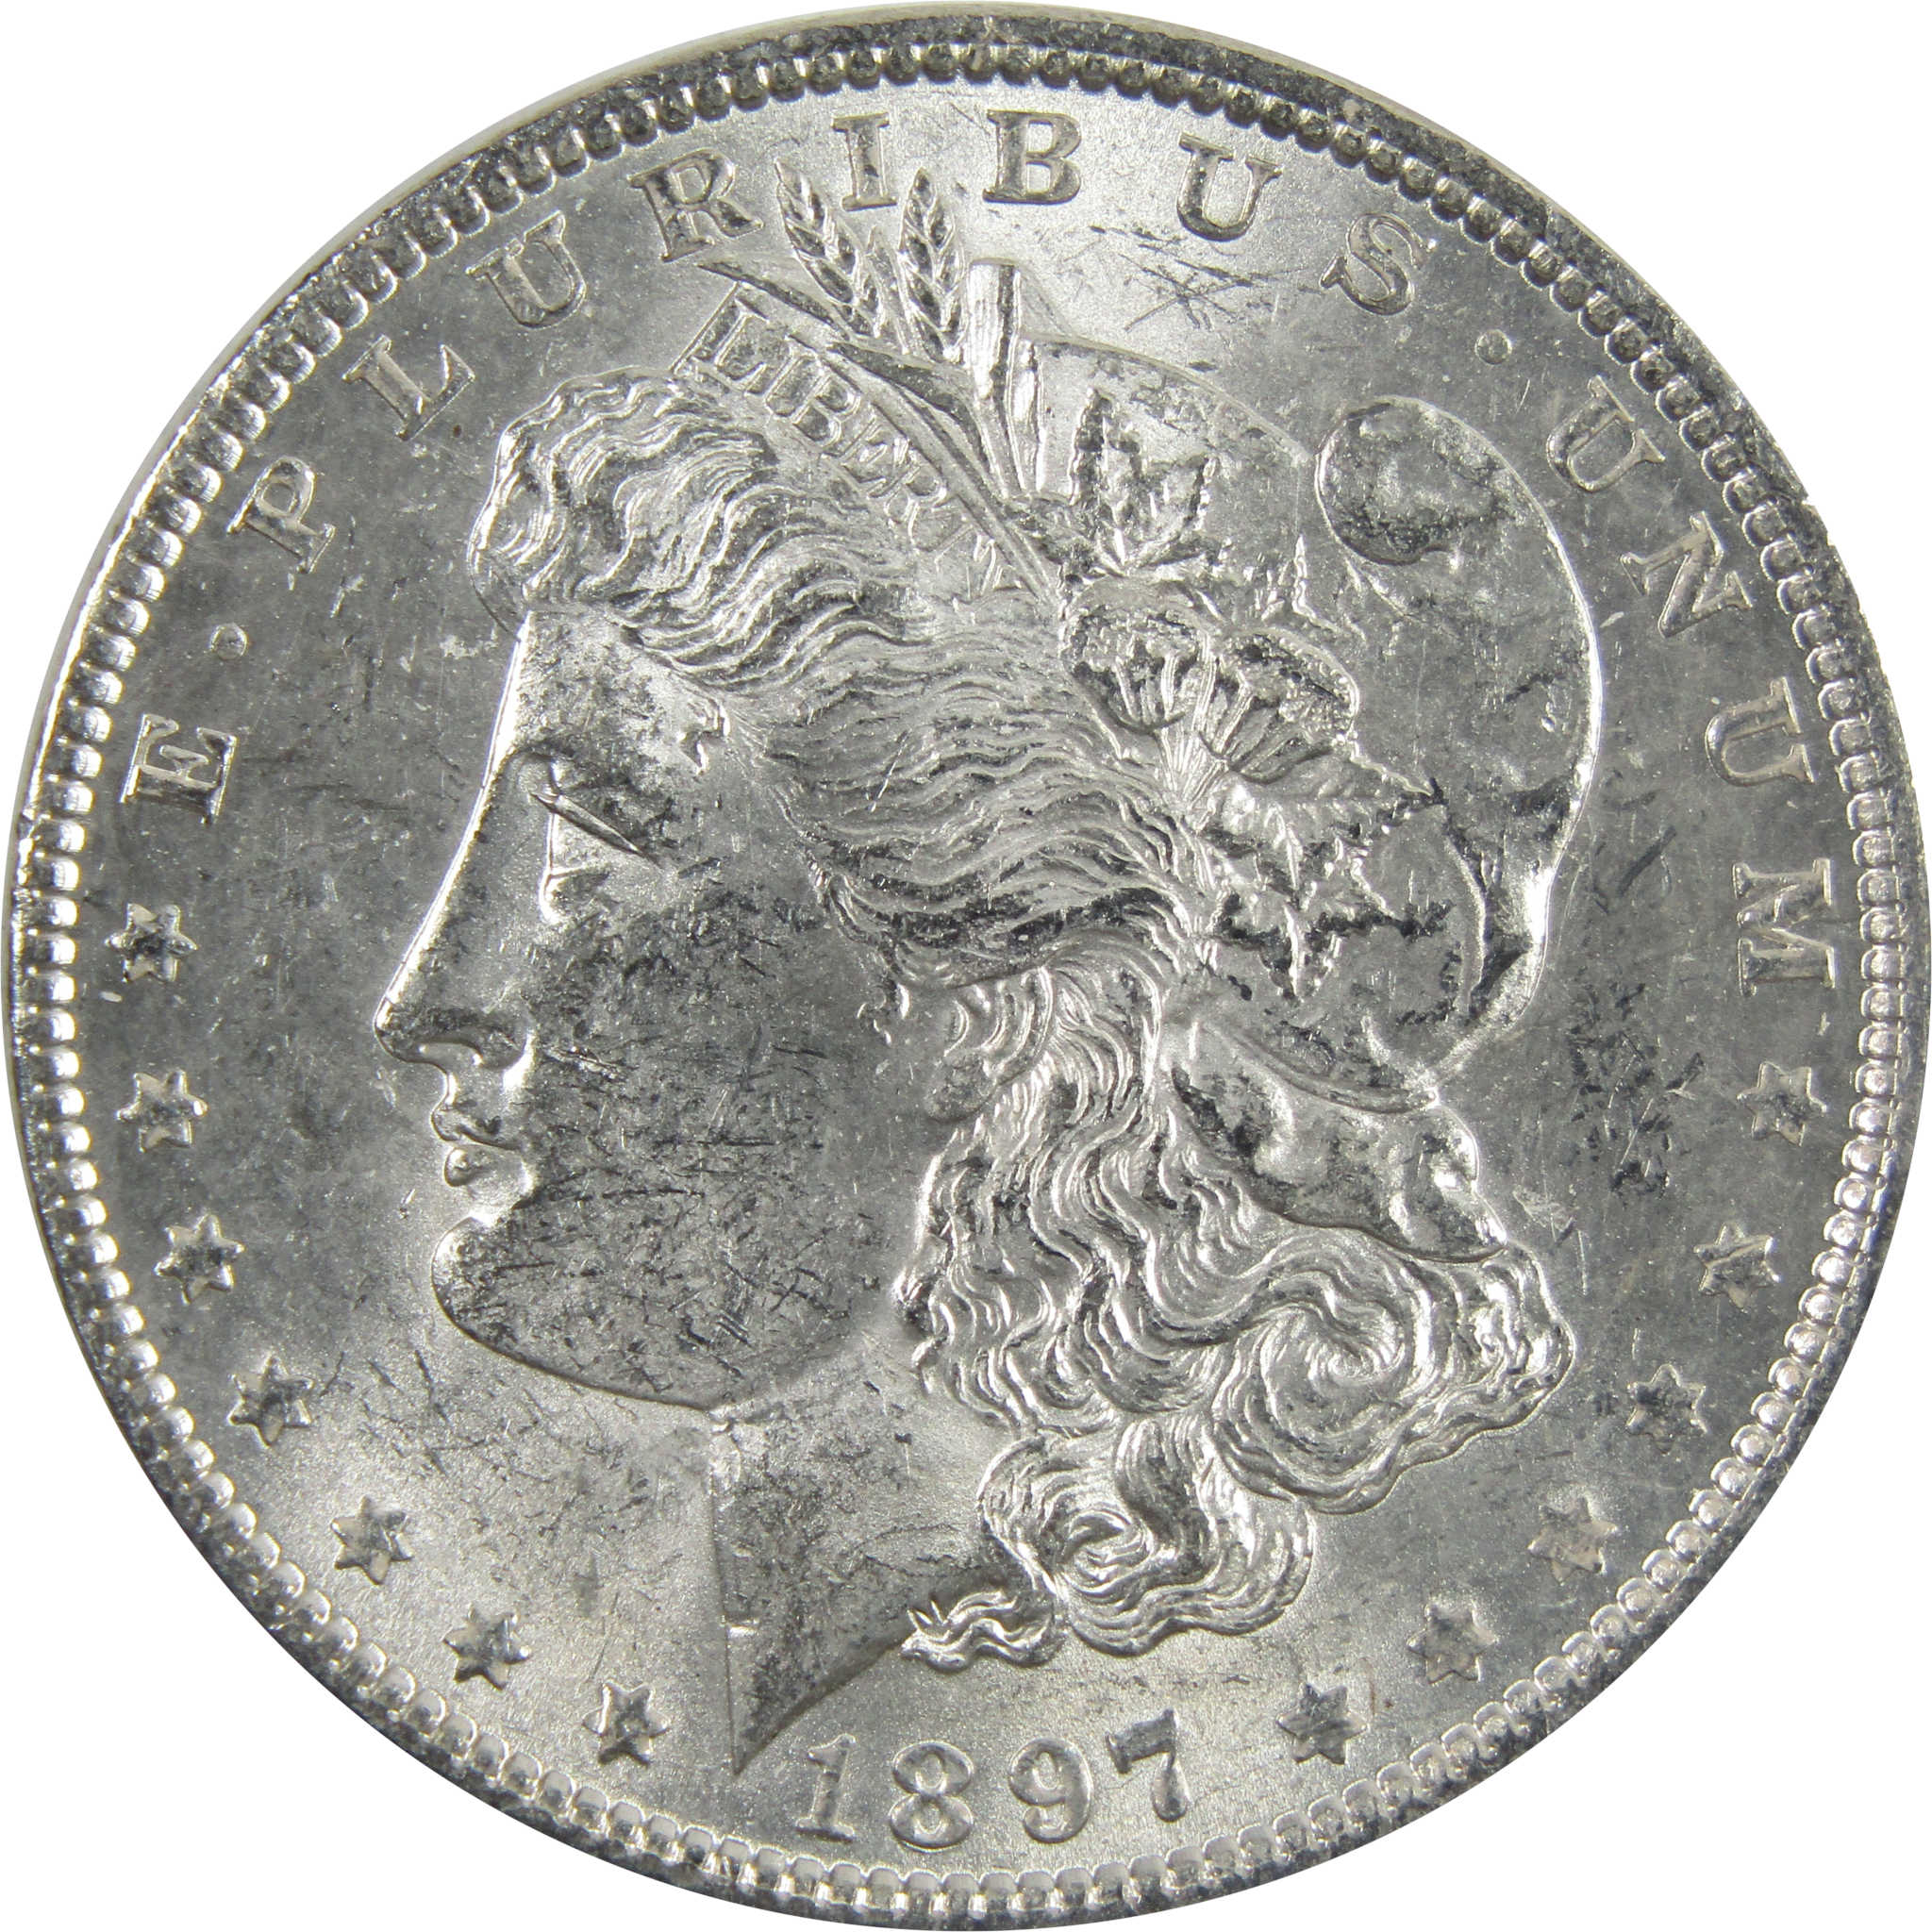 1897 Morgan Dollar BU Uncirculated 90% Silver $1 Coin SKU:I5158 - Morgan coin - Morgan silver dollar - Morgan silver dollar for sale - Profile Coins &amp; Collectibles